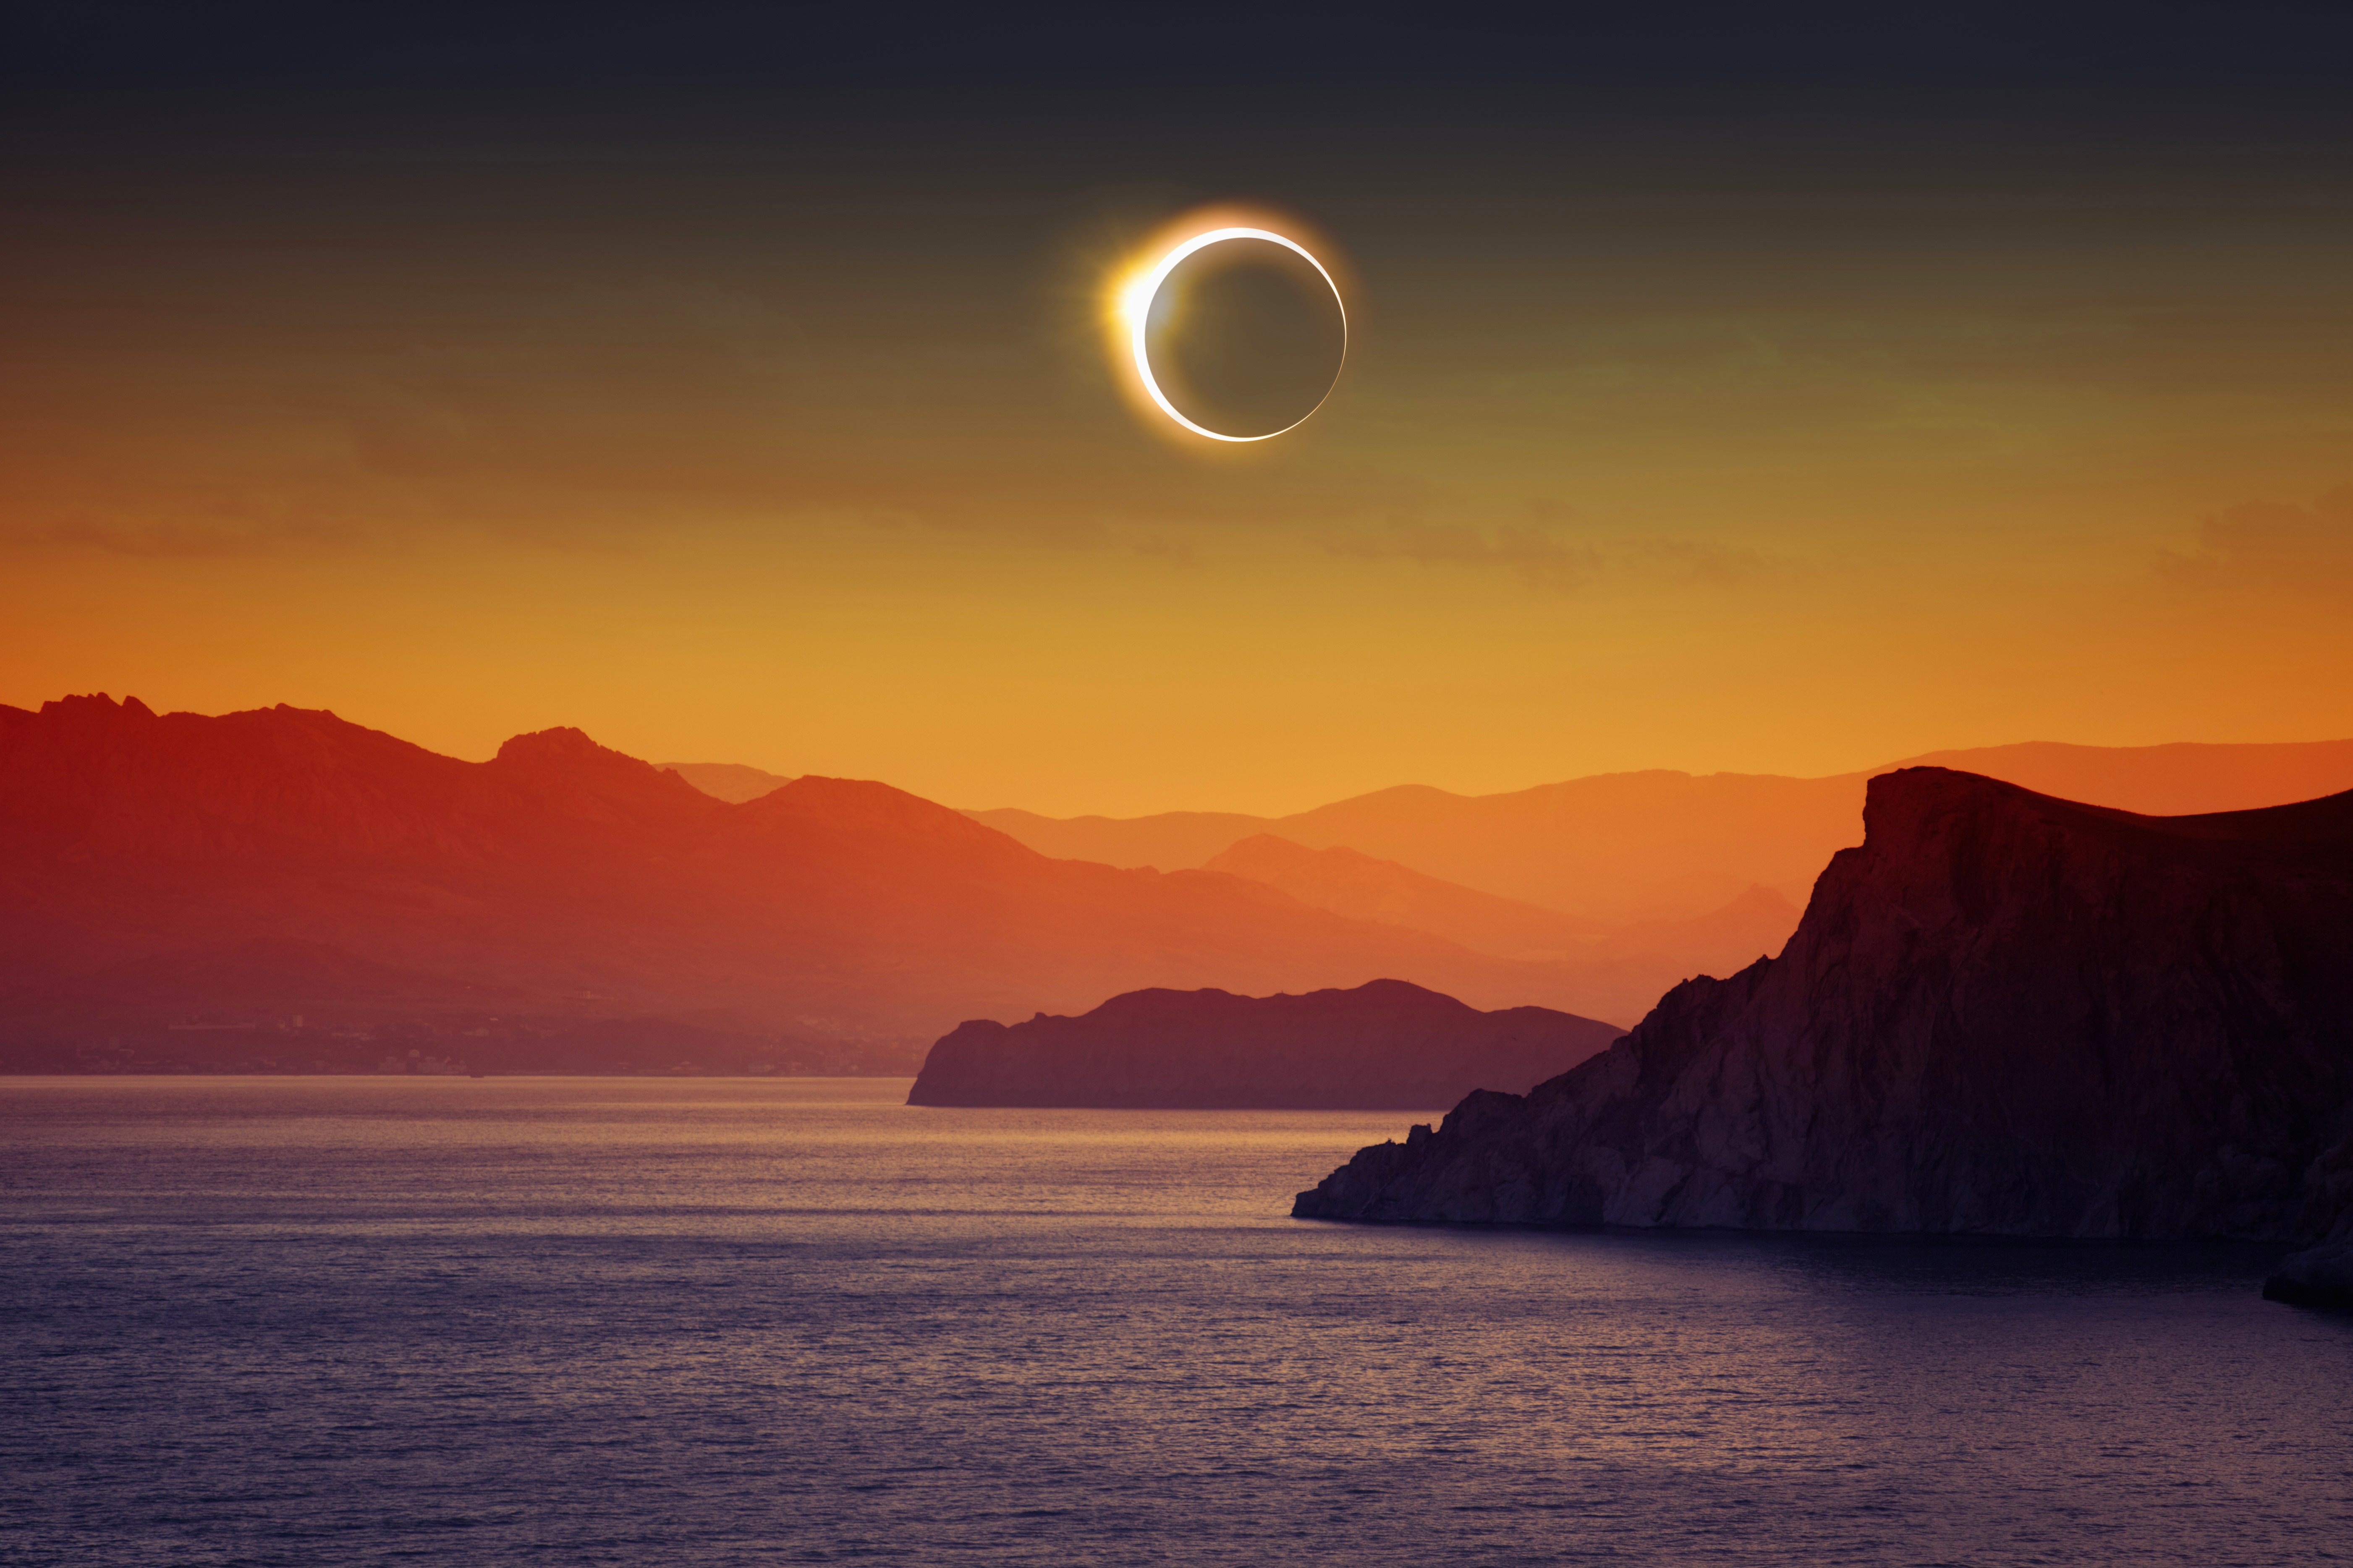 Fondos de pantalla Eclipse solar en paisaje archipiélagos